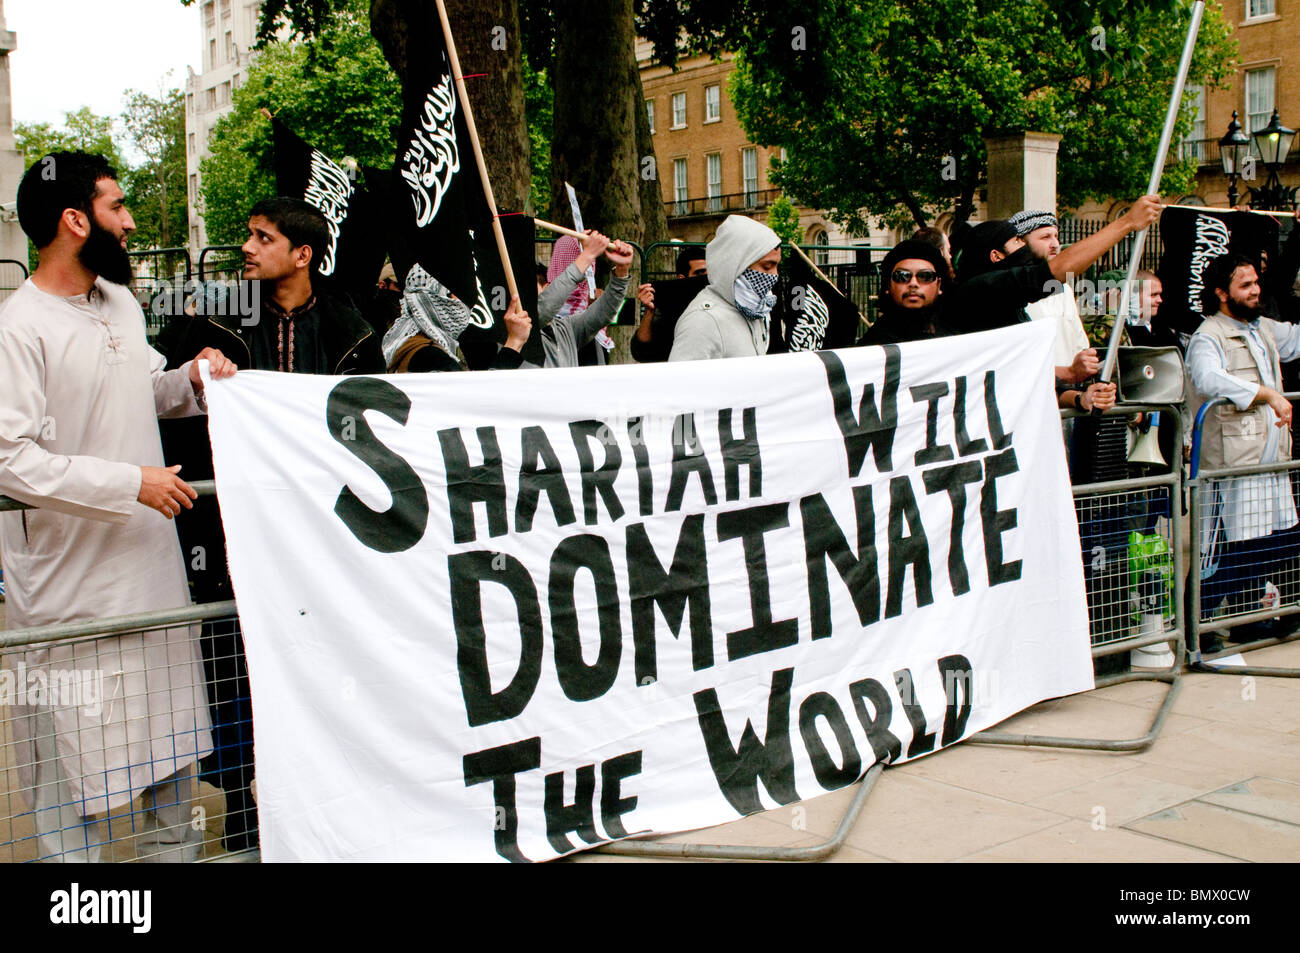 Manifestantes islamistas sosteniendo el estandarte de "La Sharia dominará el mundo", , manifestantes de la Sharia Law, Whitehall, Londres, Reino Unido, 20 de junio de 2010 Foto de stock